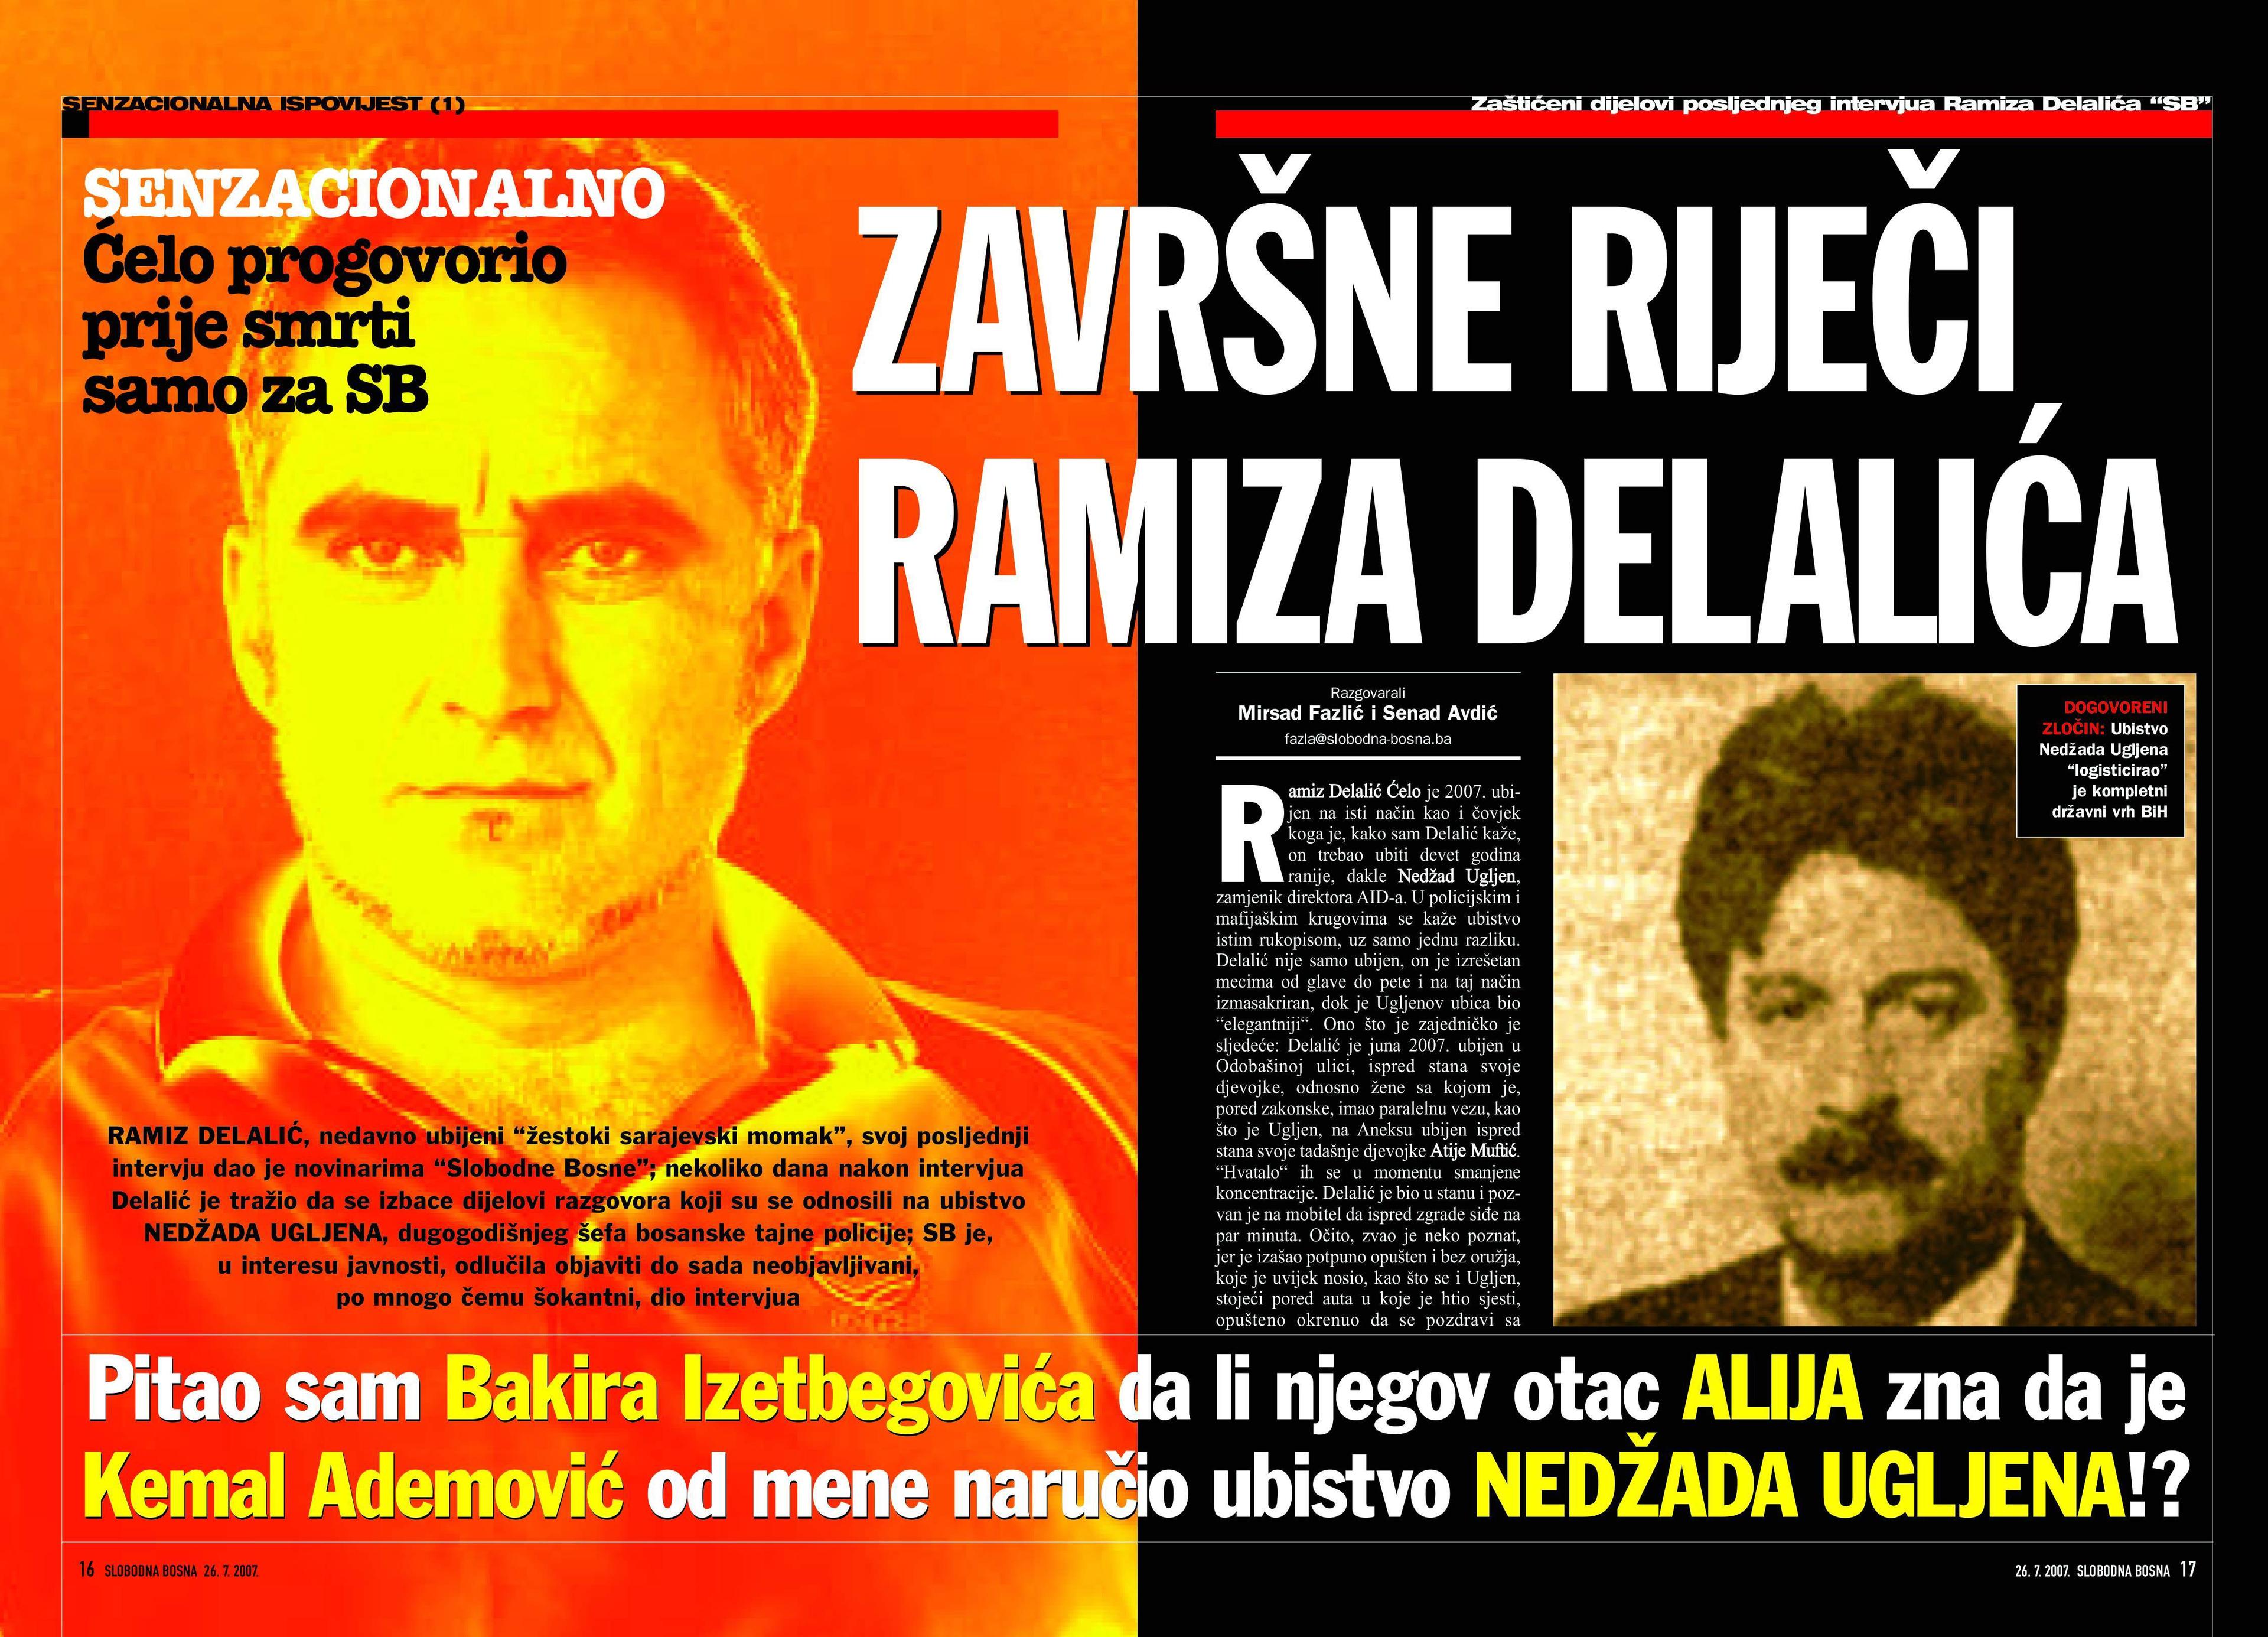 Završne riječi Ramiza Delalića Ćele u „Slobodnoj Bosni” mogu dovesti do stvarnih izvršilaca i nalogodavaca zločina - Avaz